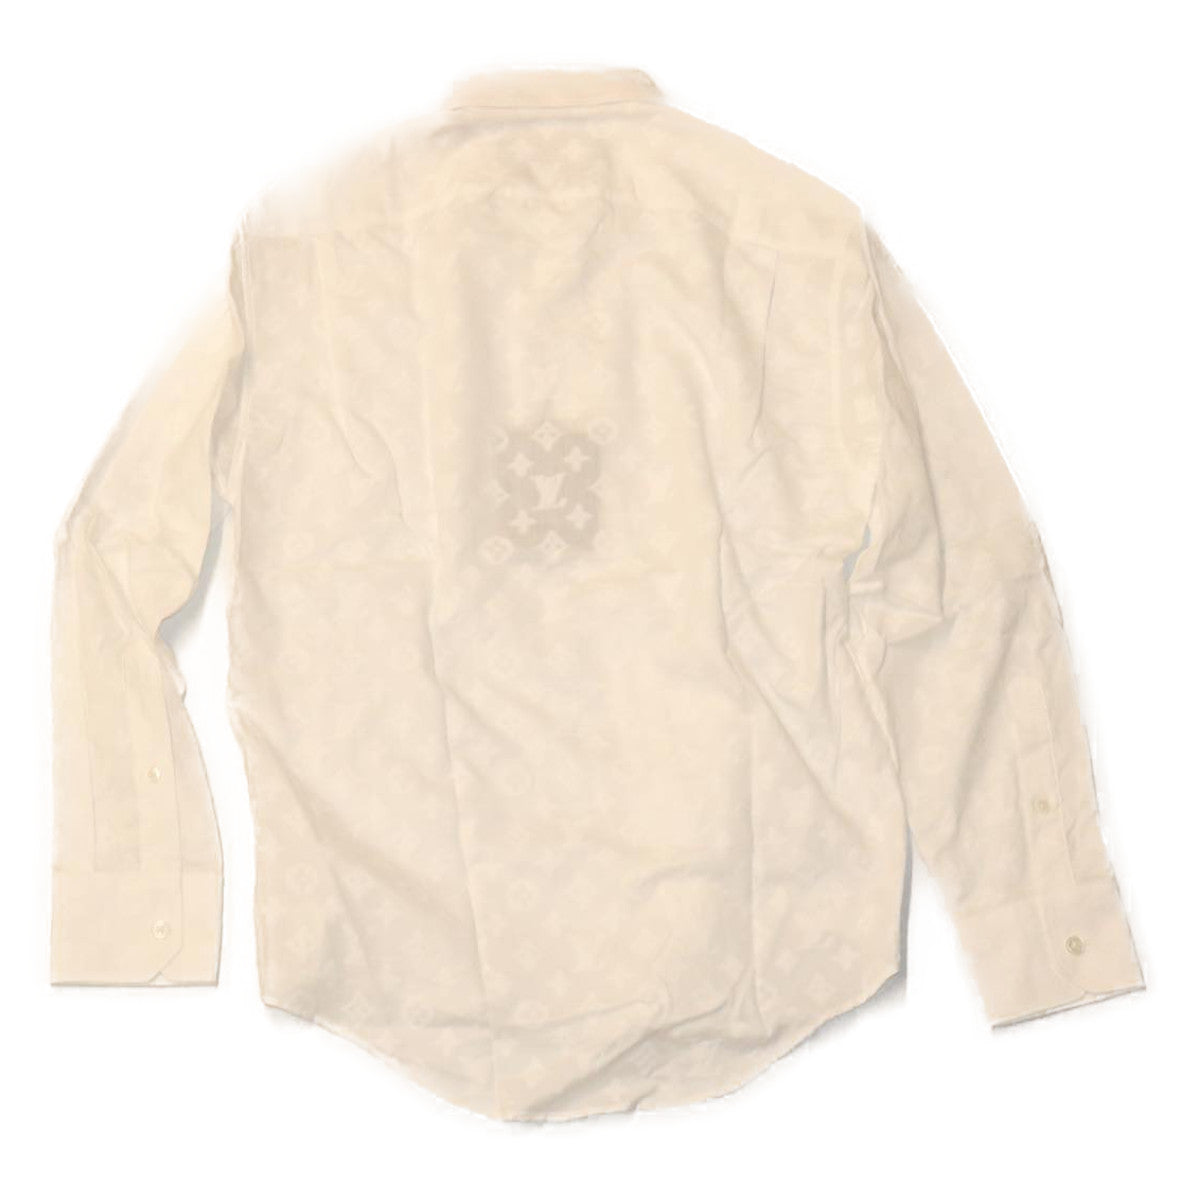 LOUIS VUITTON Shirt XS Cotton Lyocell White HUE HFS80W LV Auth ak187A